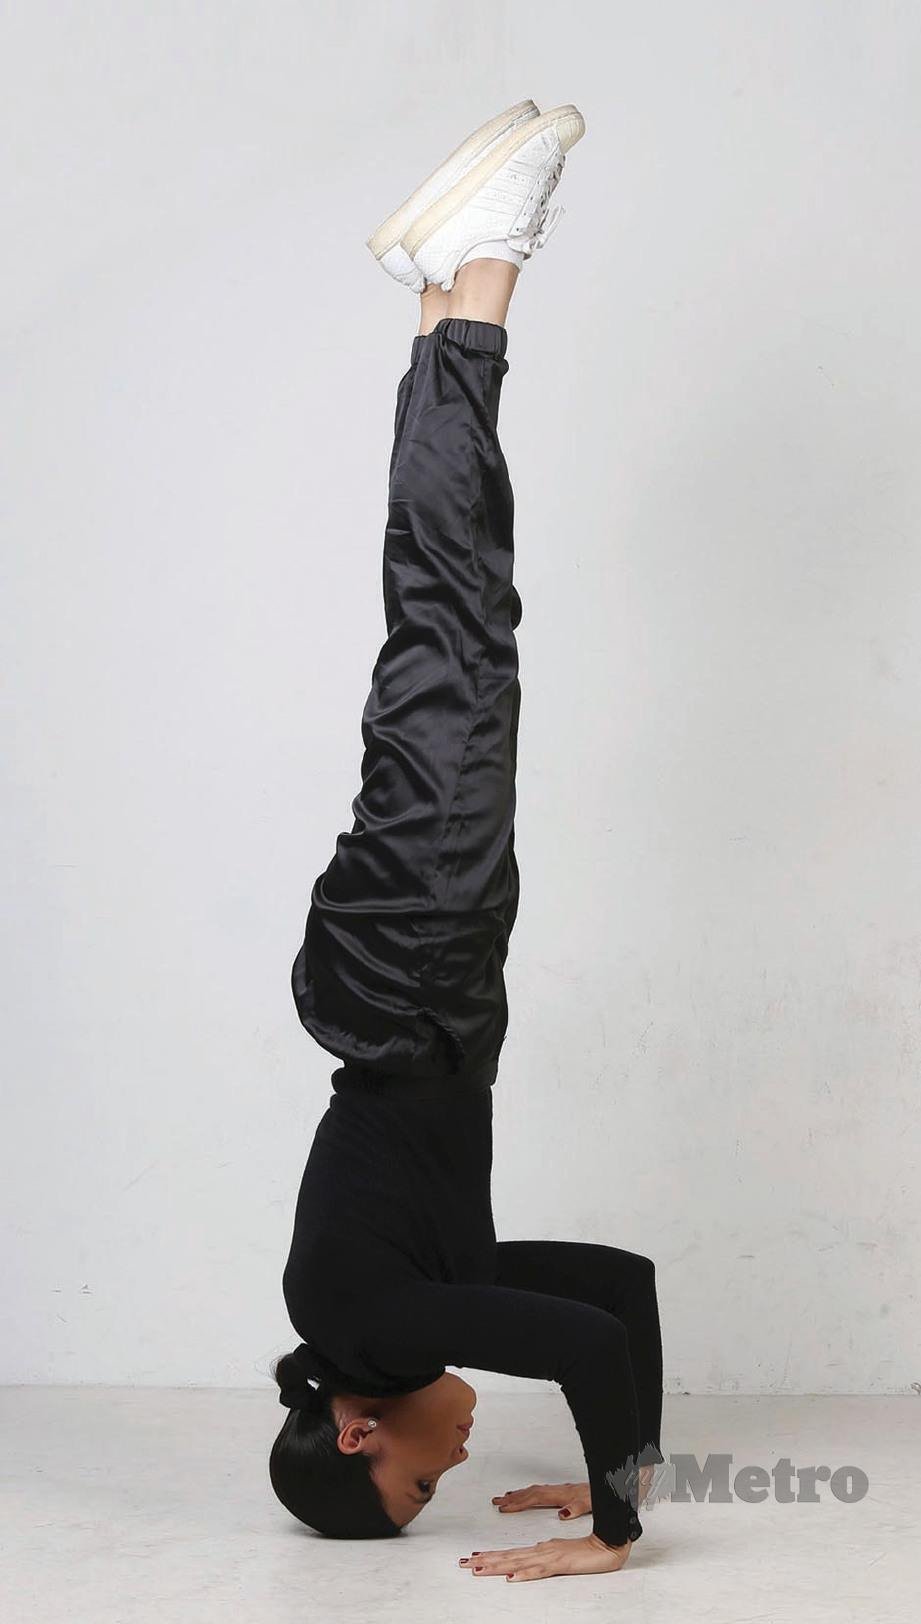 DENGAN memahami pergerakan badan, peminat yoga boleh melakukan pelbagai posisi. FOTO Halimaton Saadiah Sulaiman